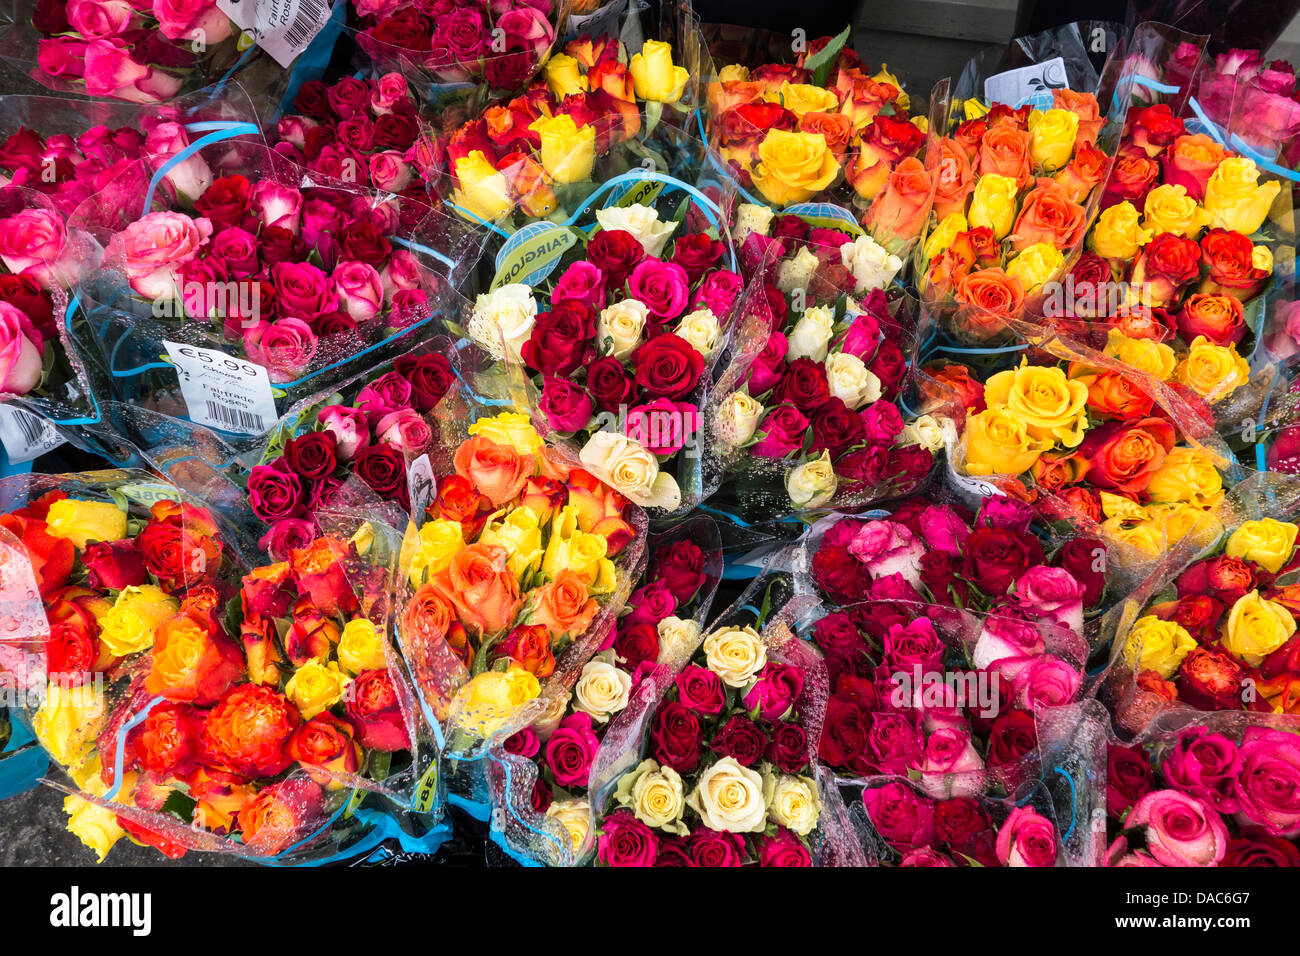 Ramos de rosas en venta en frente de una tienda de flores- rojo naranja, amarillo, rosa y morado Foto de stock